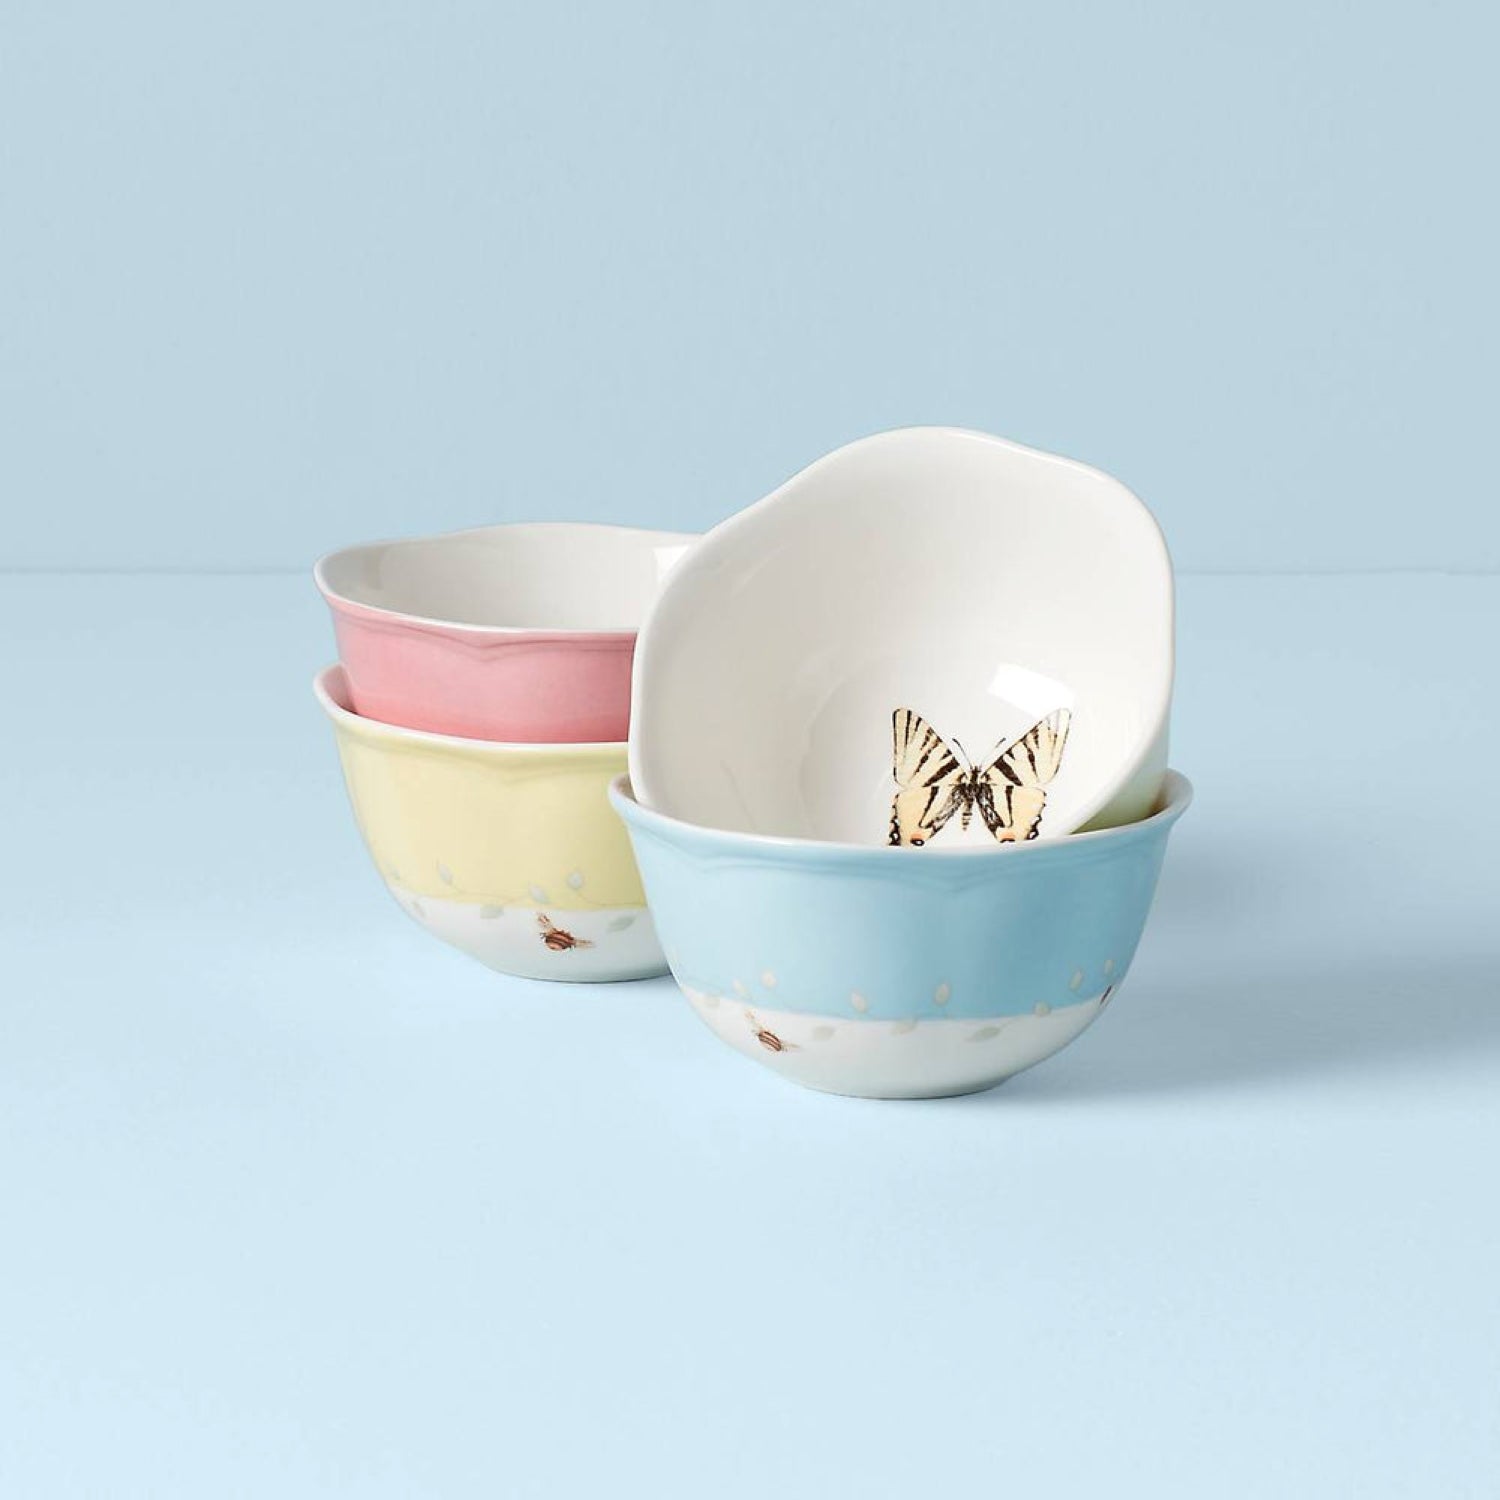 Lenox Butterfly Meadow Dessert Bowls, Set of 4 – Lijo Décor